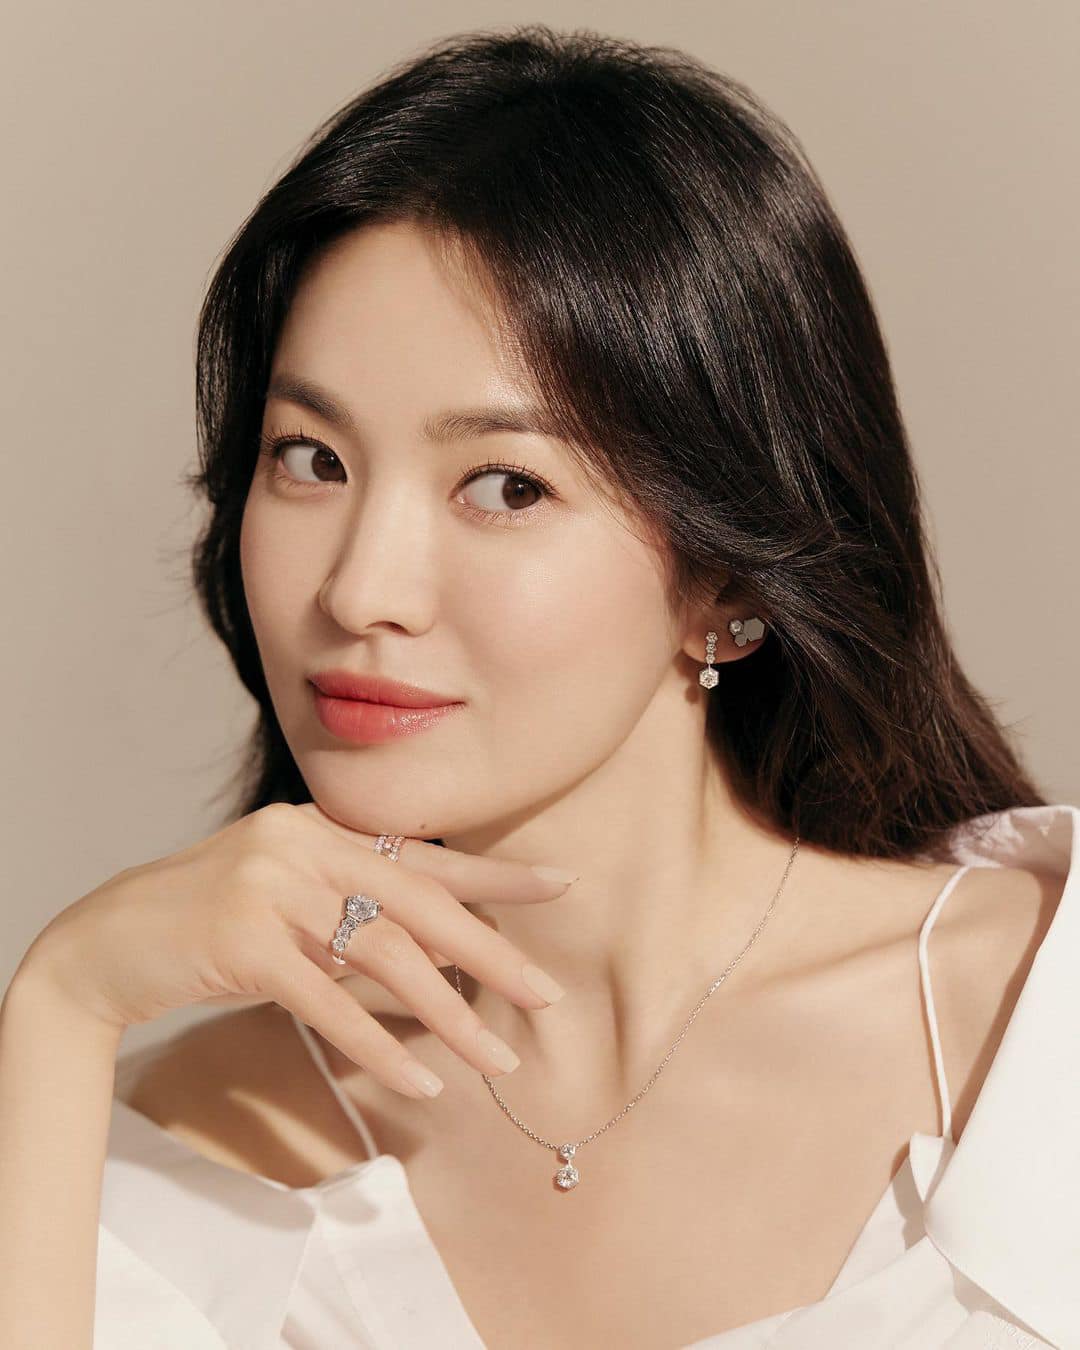 Song Hye Kyo hiếm khi mặc đồ hở nhưng hễ mặc là ai cũng phải bất ngờ với điểm tuyệt phẩm này - Ảnh 11.